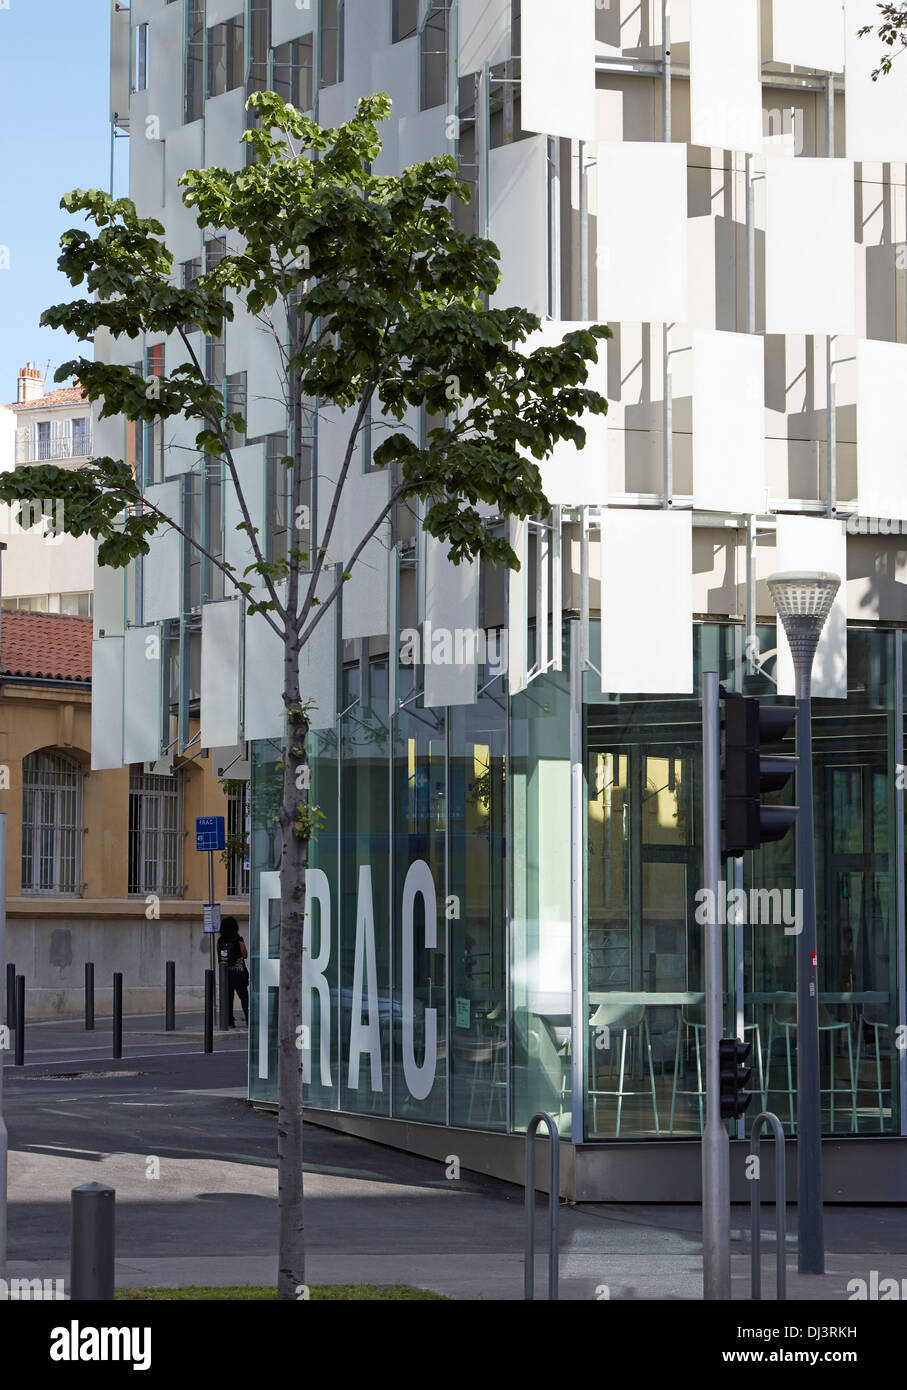 FRAC, Marseille, France. Architect: Kengo Kuma, 2013. Exterior view showing cladding and signage. Stock Photo